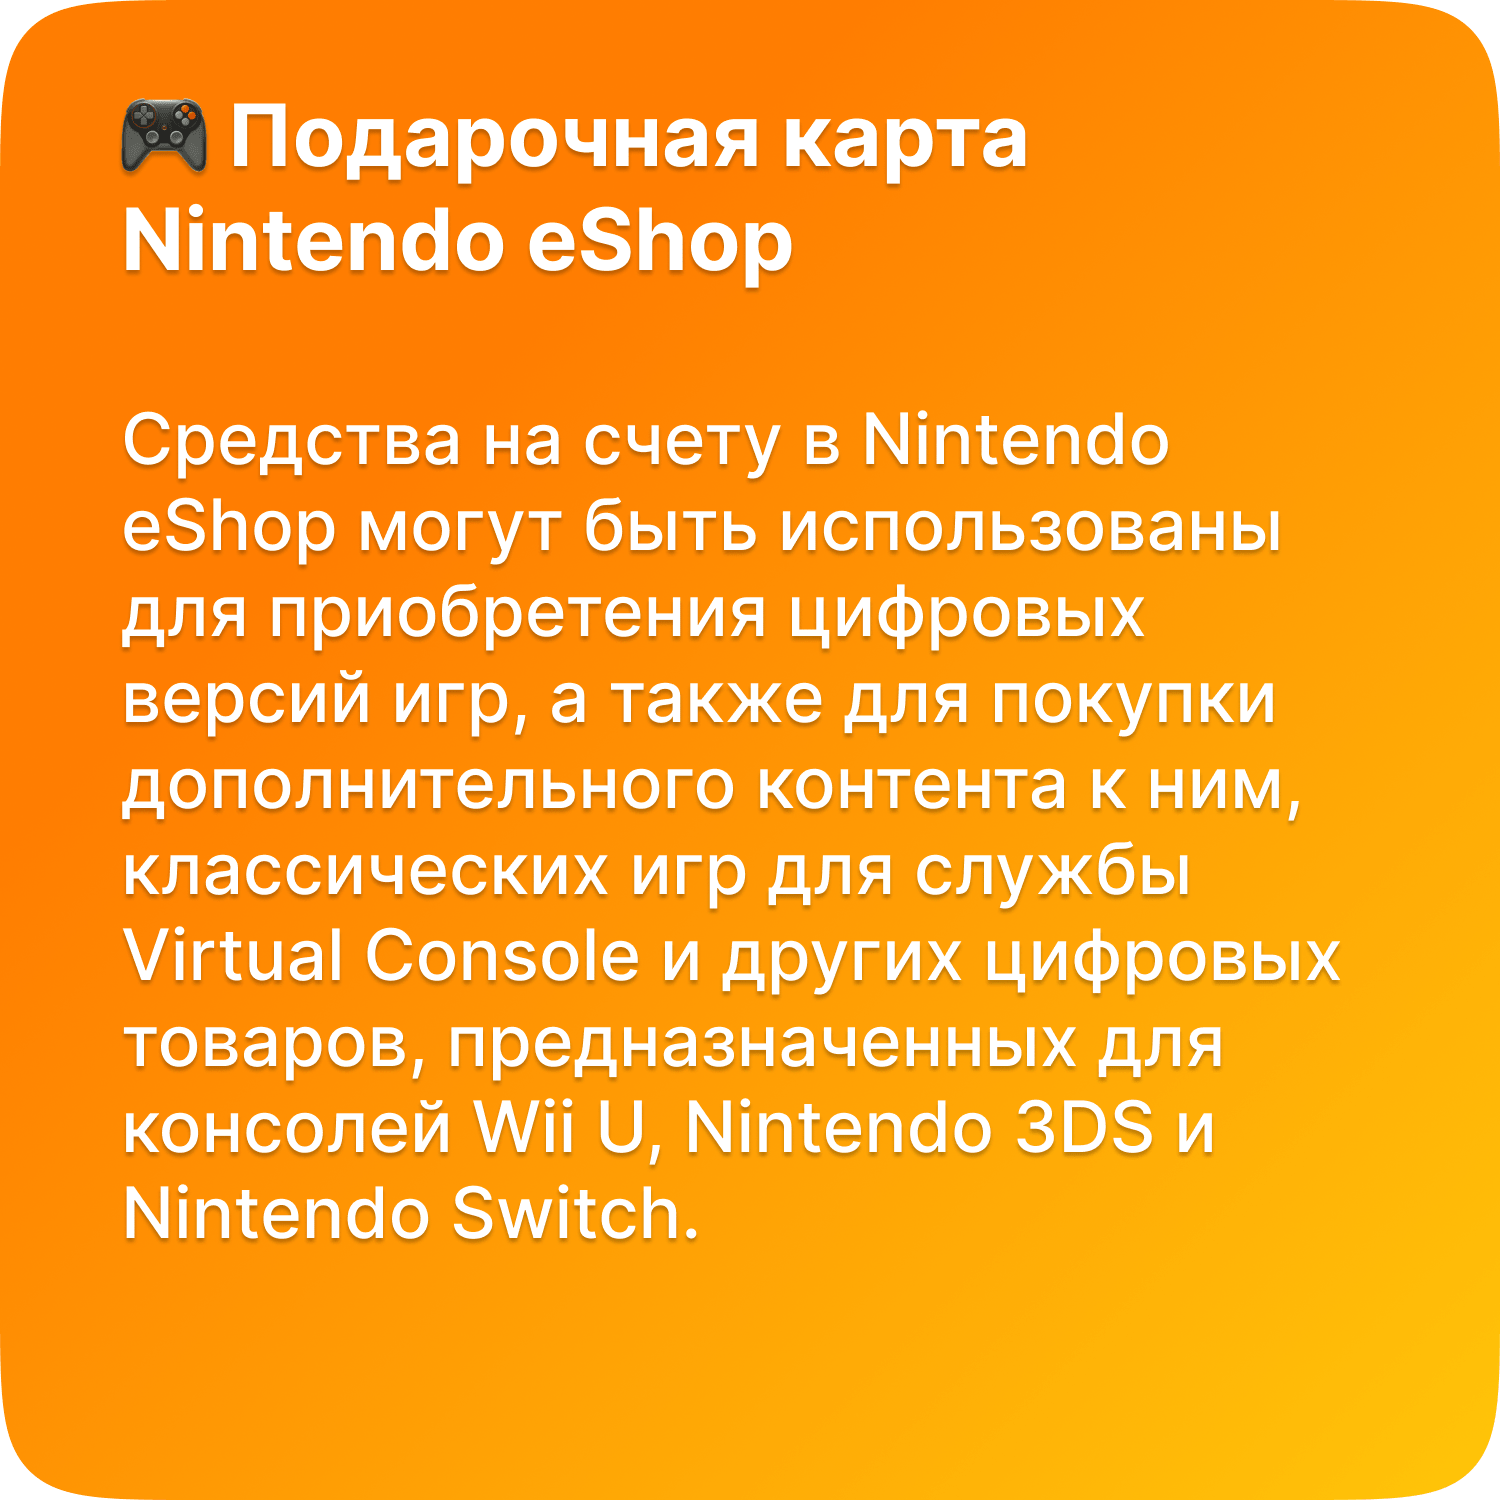 Подарочная карта Nintendo eShop - 5 USD